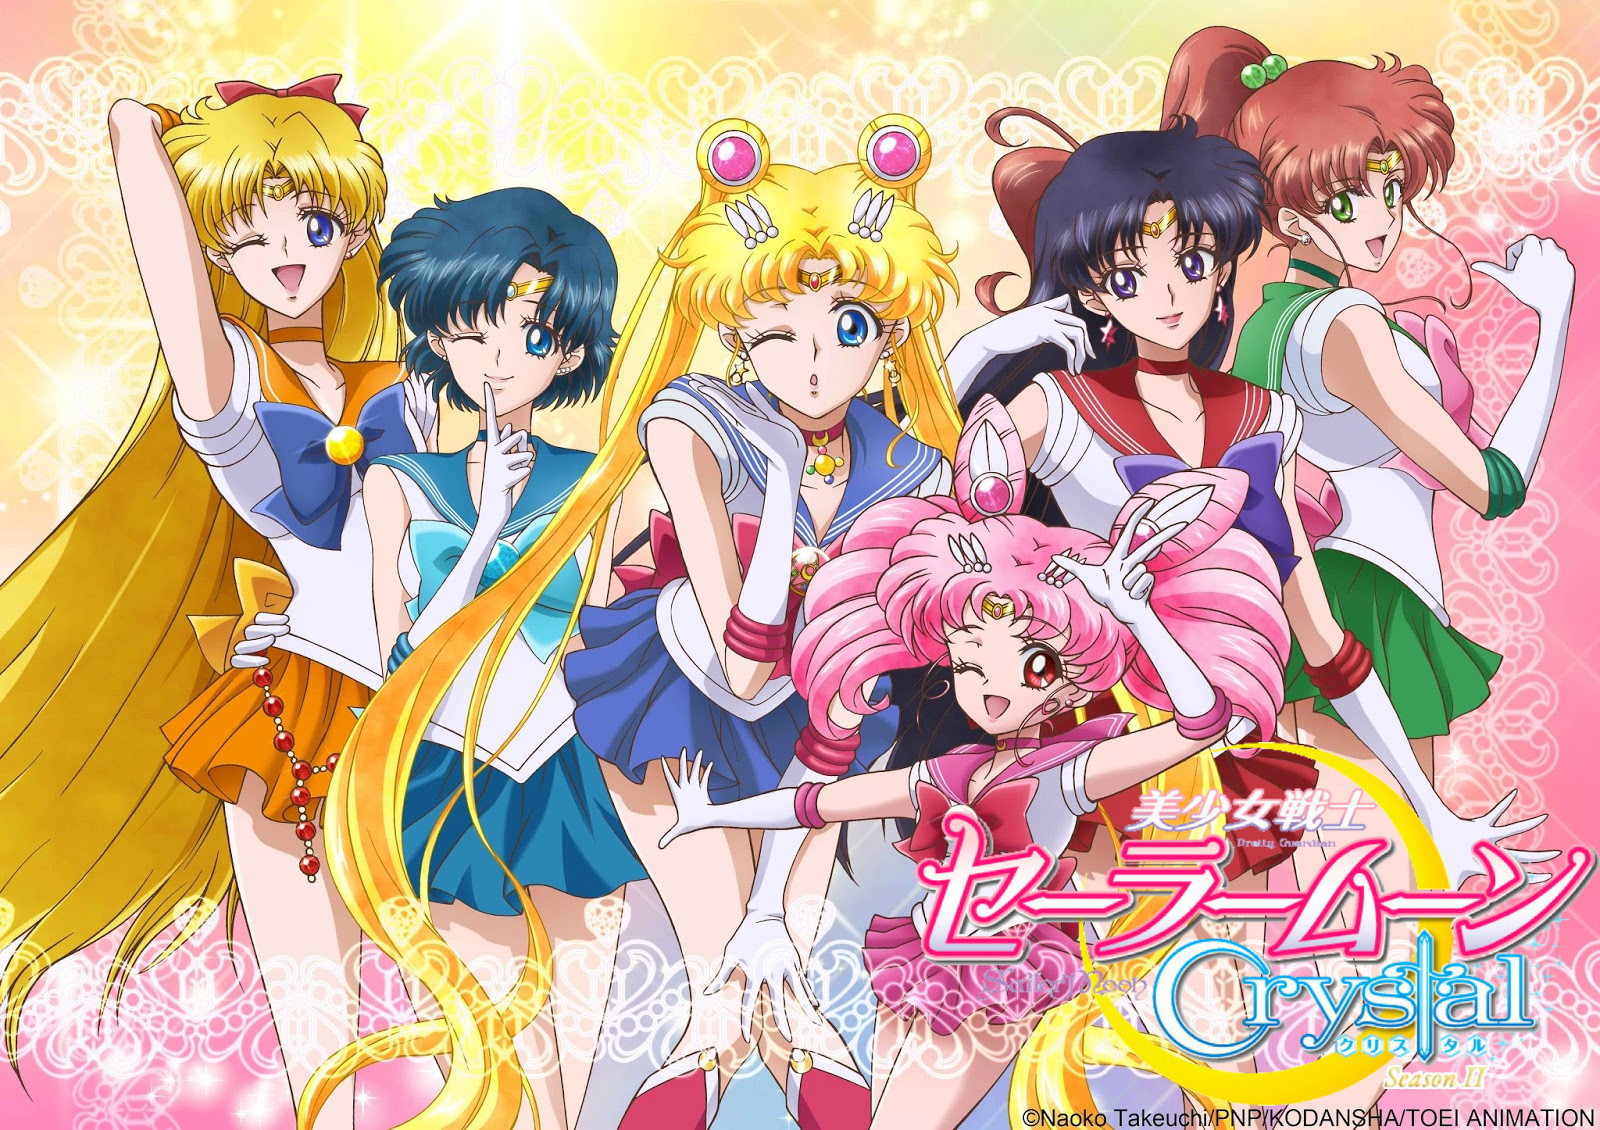 RESUMO COMPLETO de Sailor Moon Crystal temp. 1, 2 e 3! 